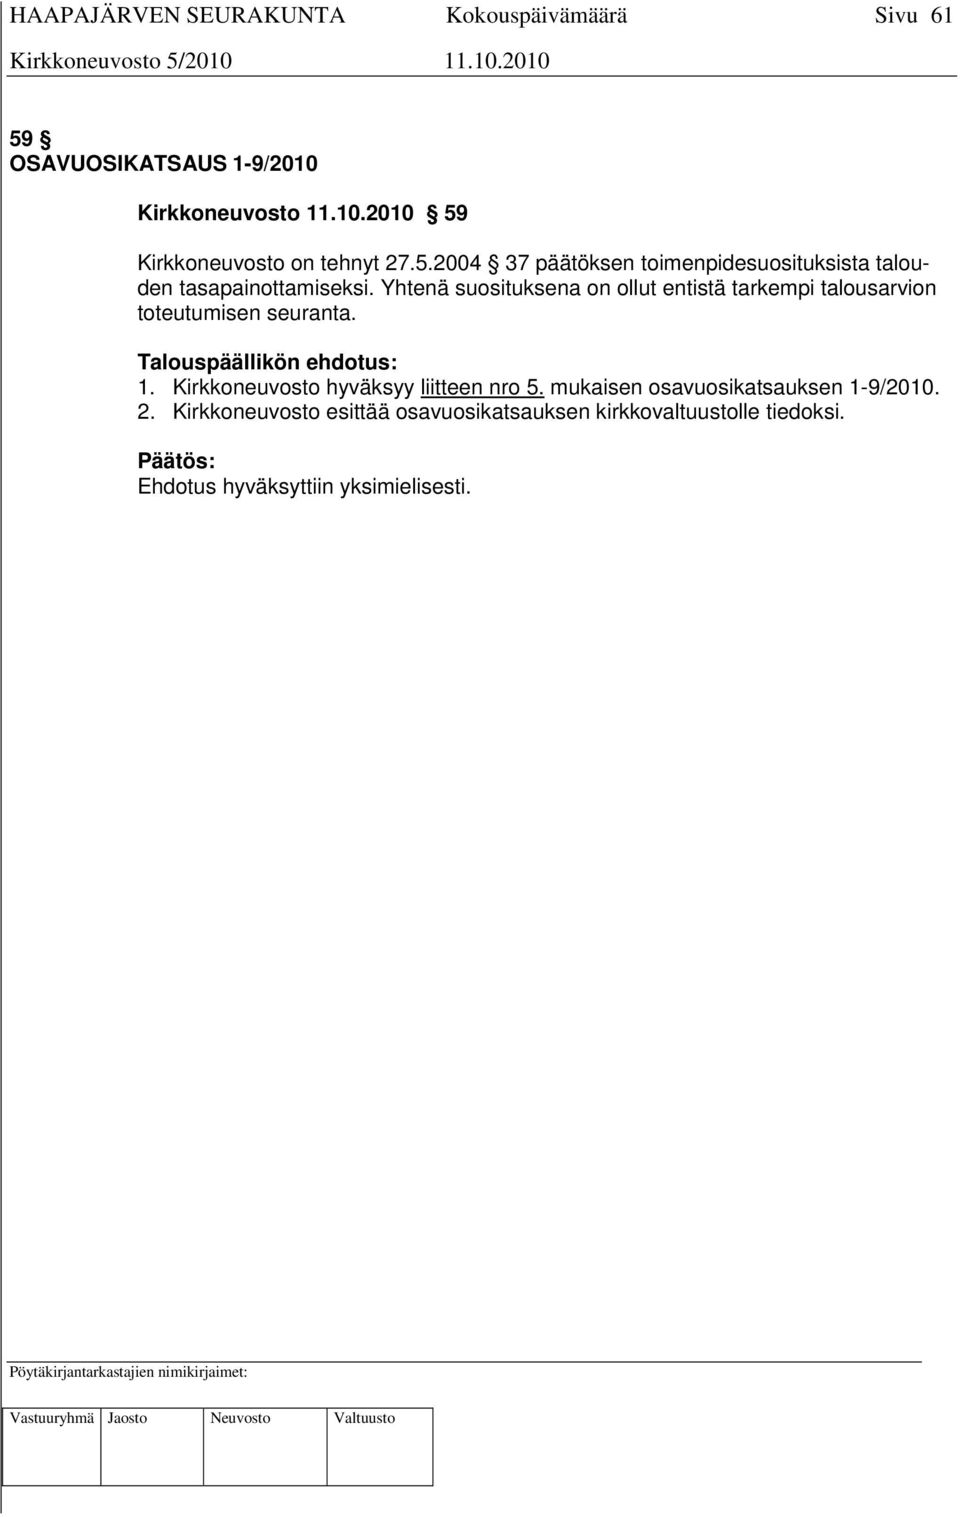 Talouspäällikön ehdotus: 1. Kirkkoneuvosto hyväksyy liitteen nro 5. mukaisen osavuosikatsauksen 1-9/2010.